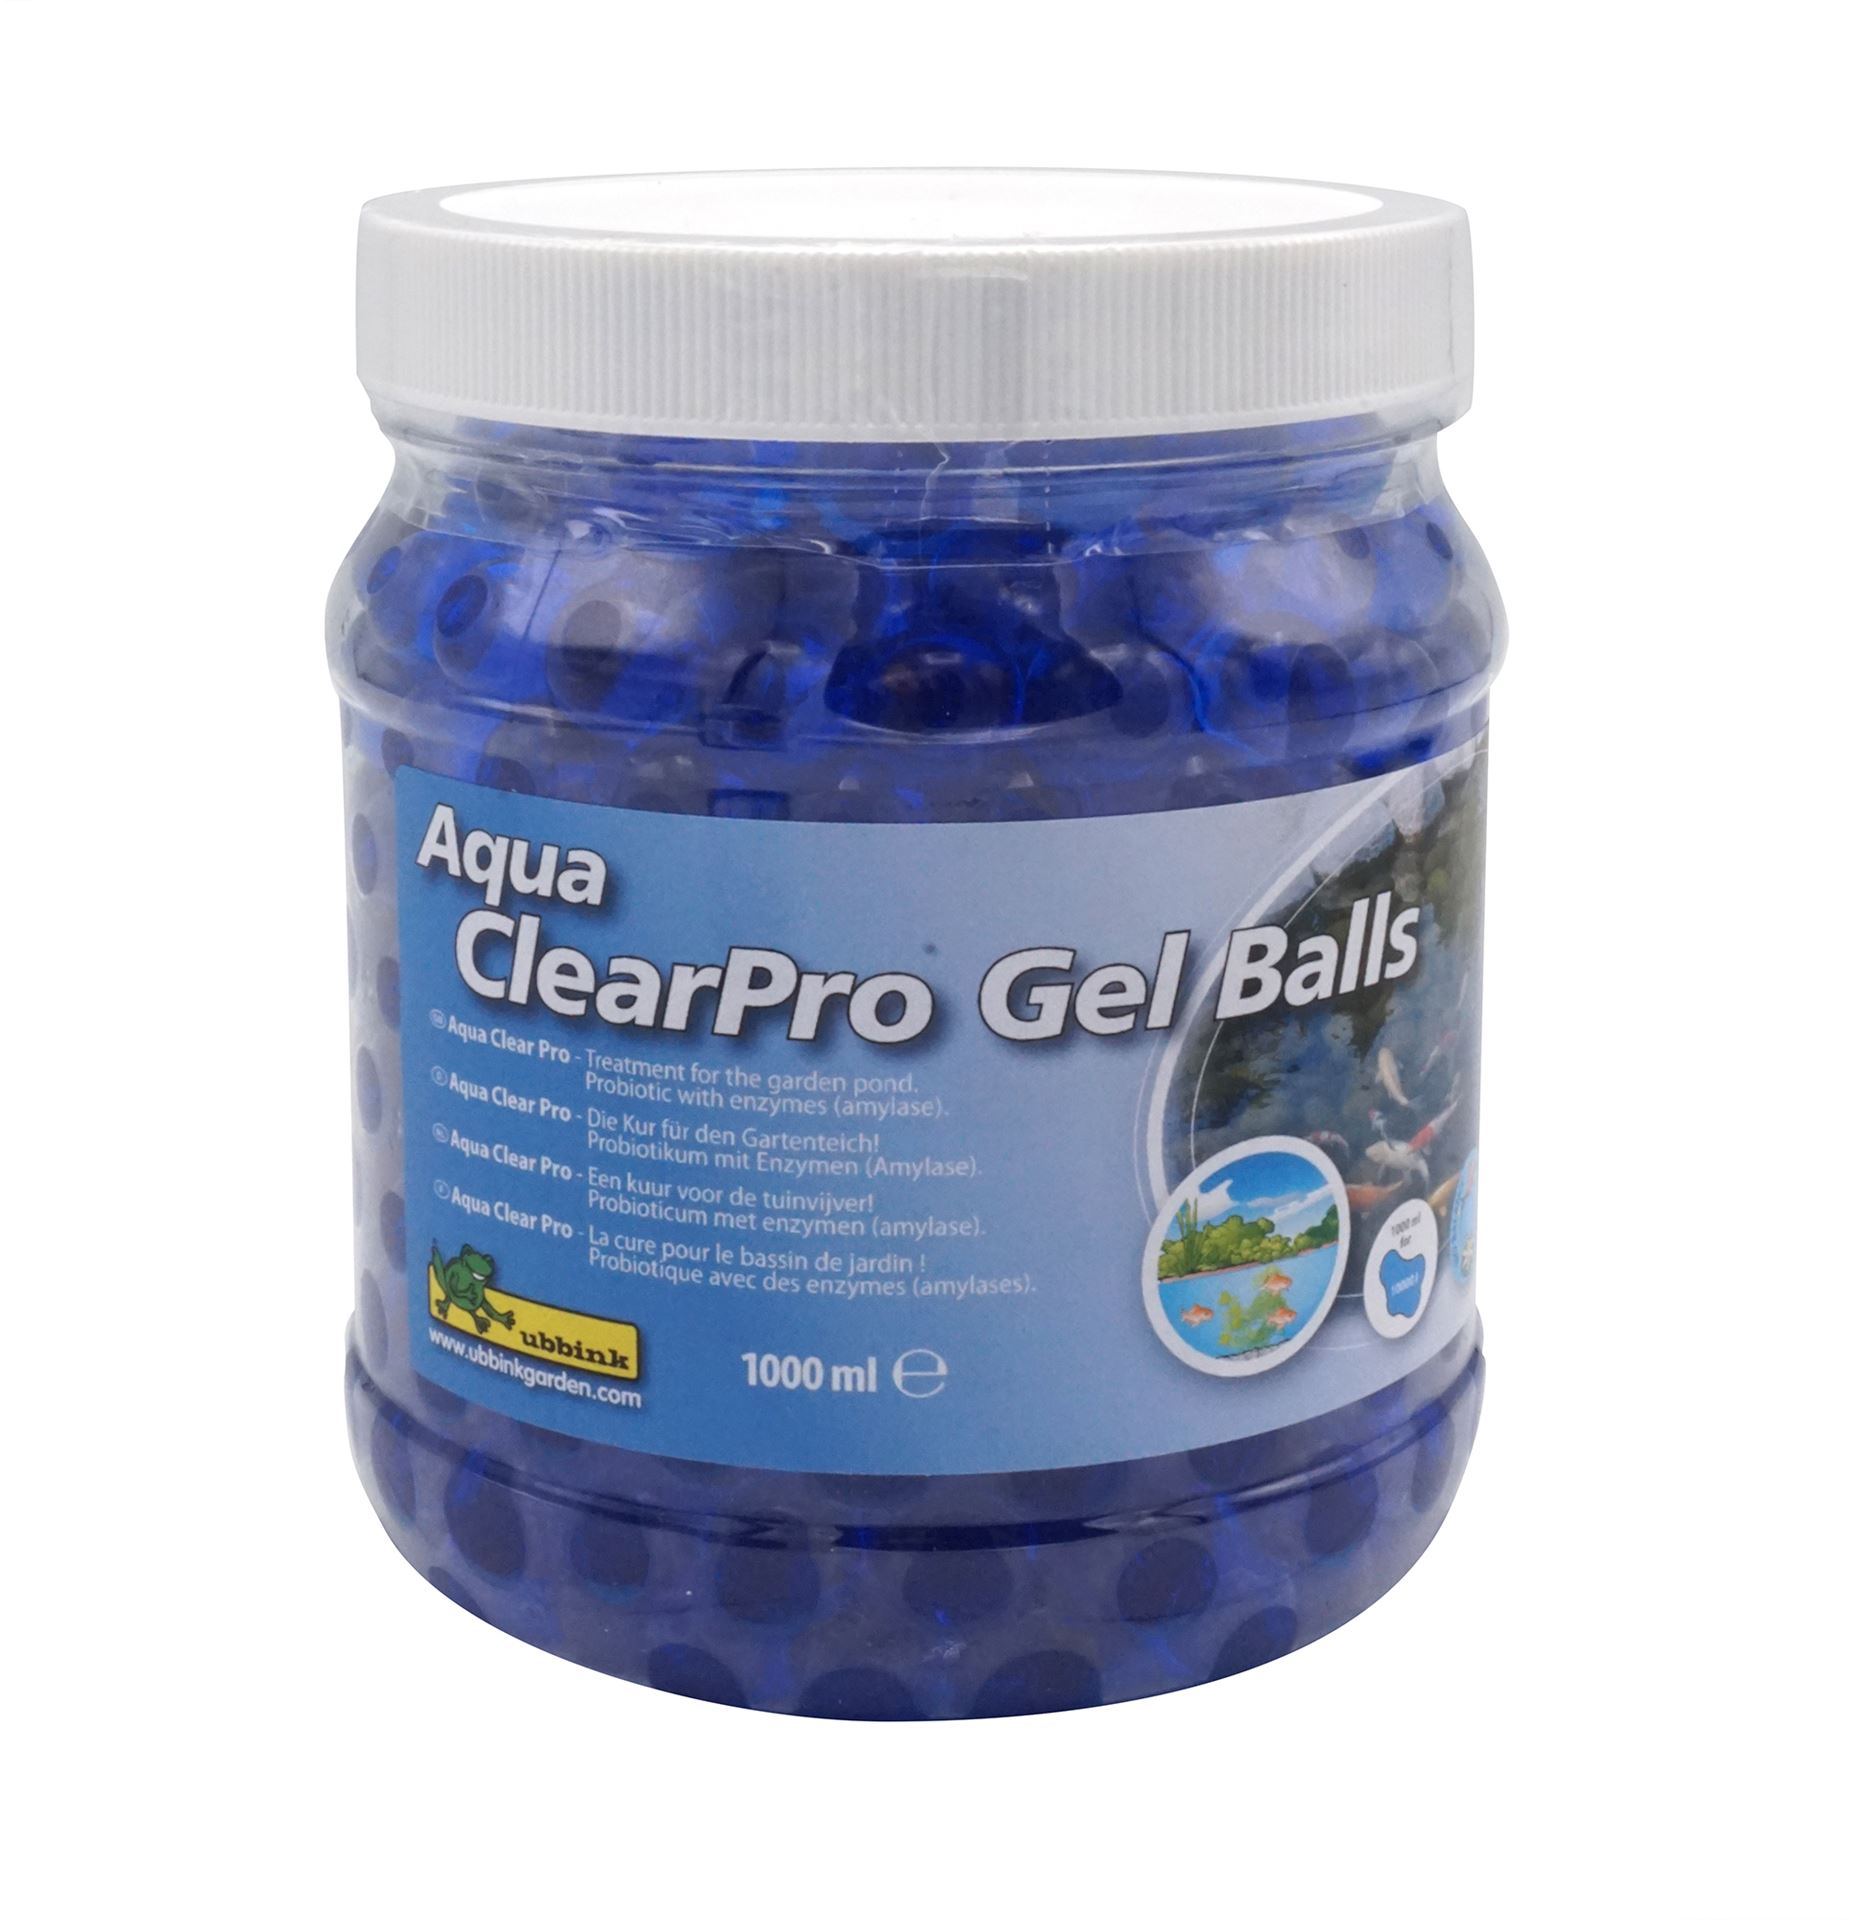 Aqua-ClearPro-Gel-Balls-1000-ml-met-amylase-de-behandeling-voor-een-gezonde-tuinvijver